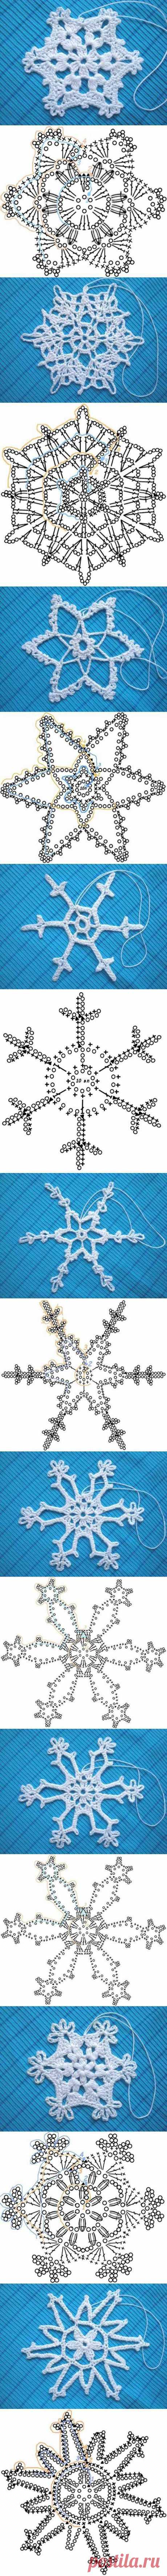 DIY Crochet Snowflakes Pattern DIY Crochet... / Handmade / 1. Крючкотворные Мотивы / Pinme.ru / Ольга Захарова-Черных